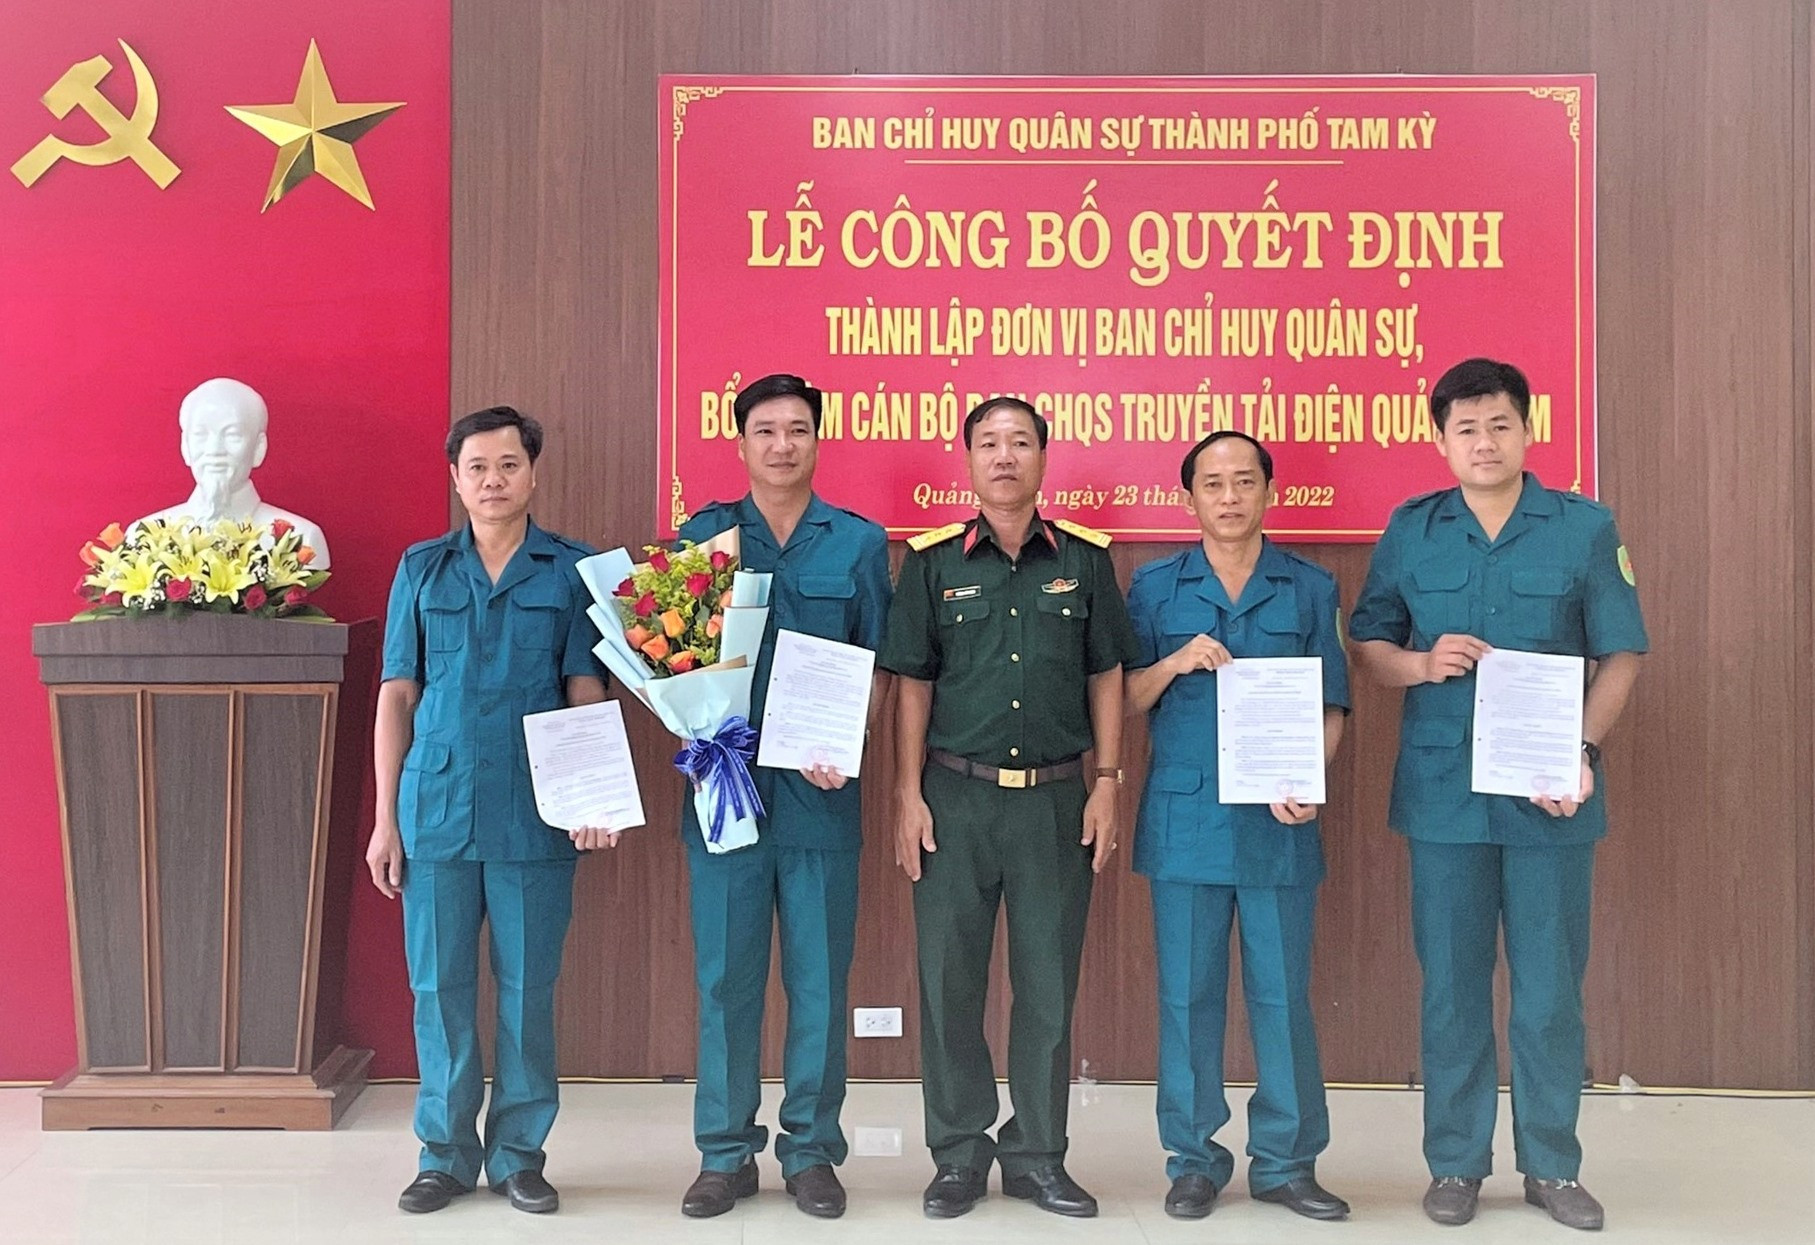 Ban Chỉ huy quân sự thành phố Tam Kỳ trao quyết định thành lập Ban CHQS Truyền tải điện Quảng Nam.